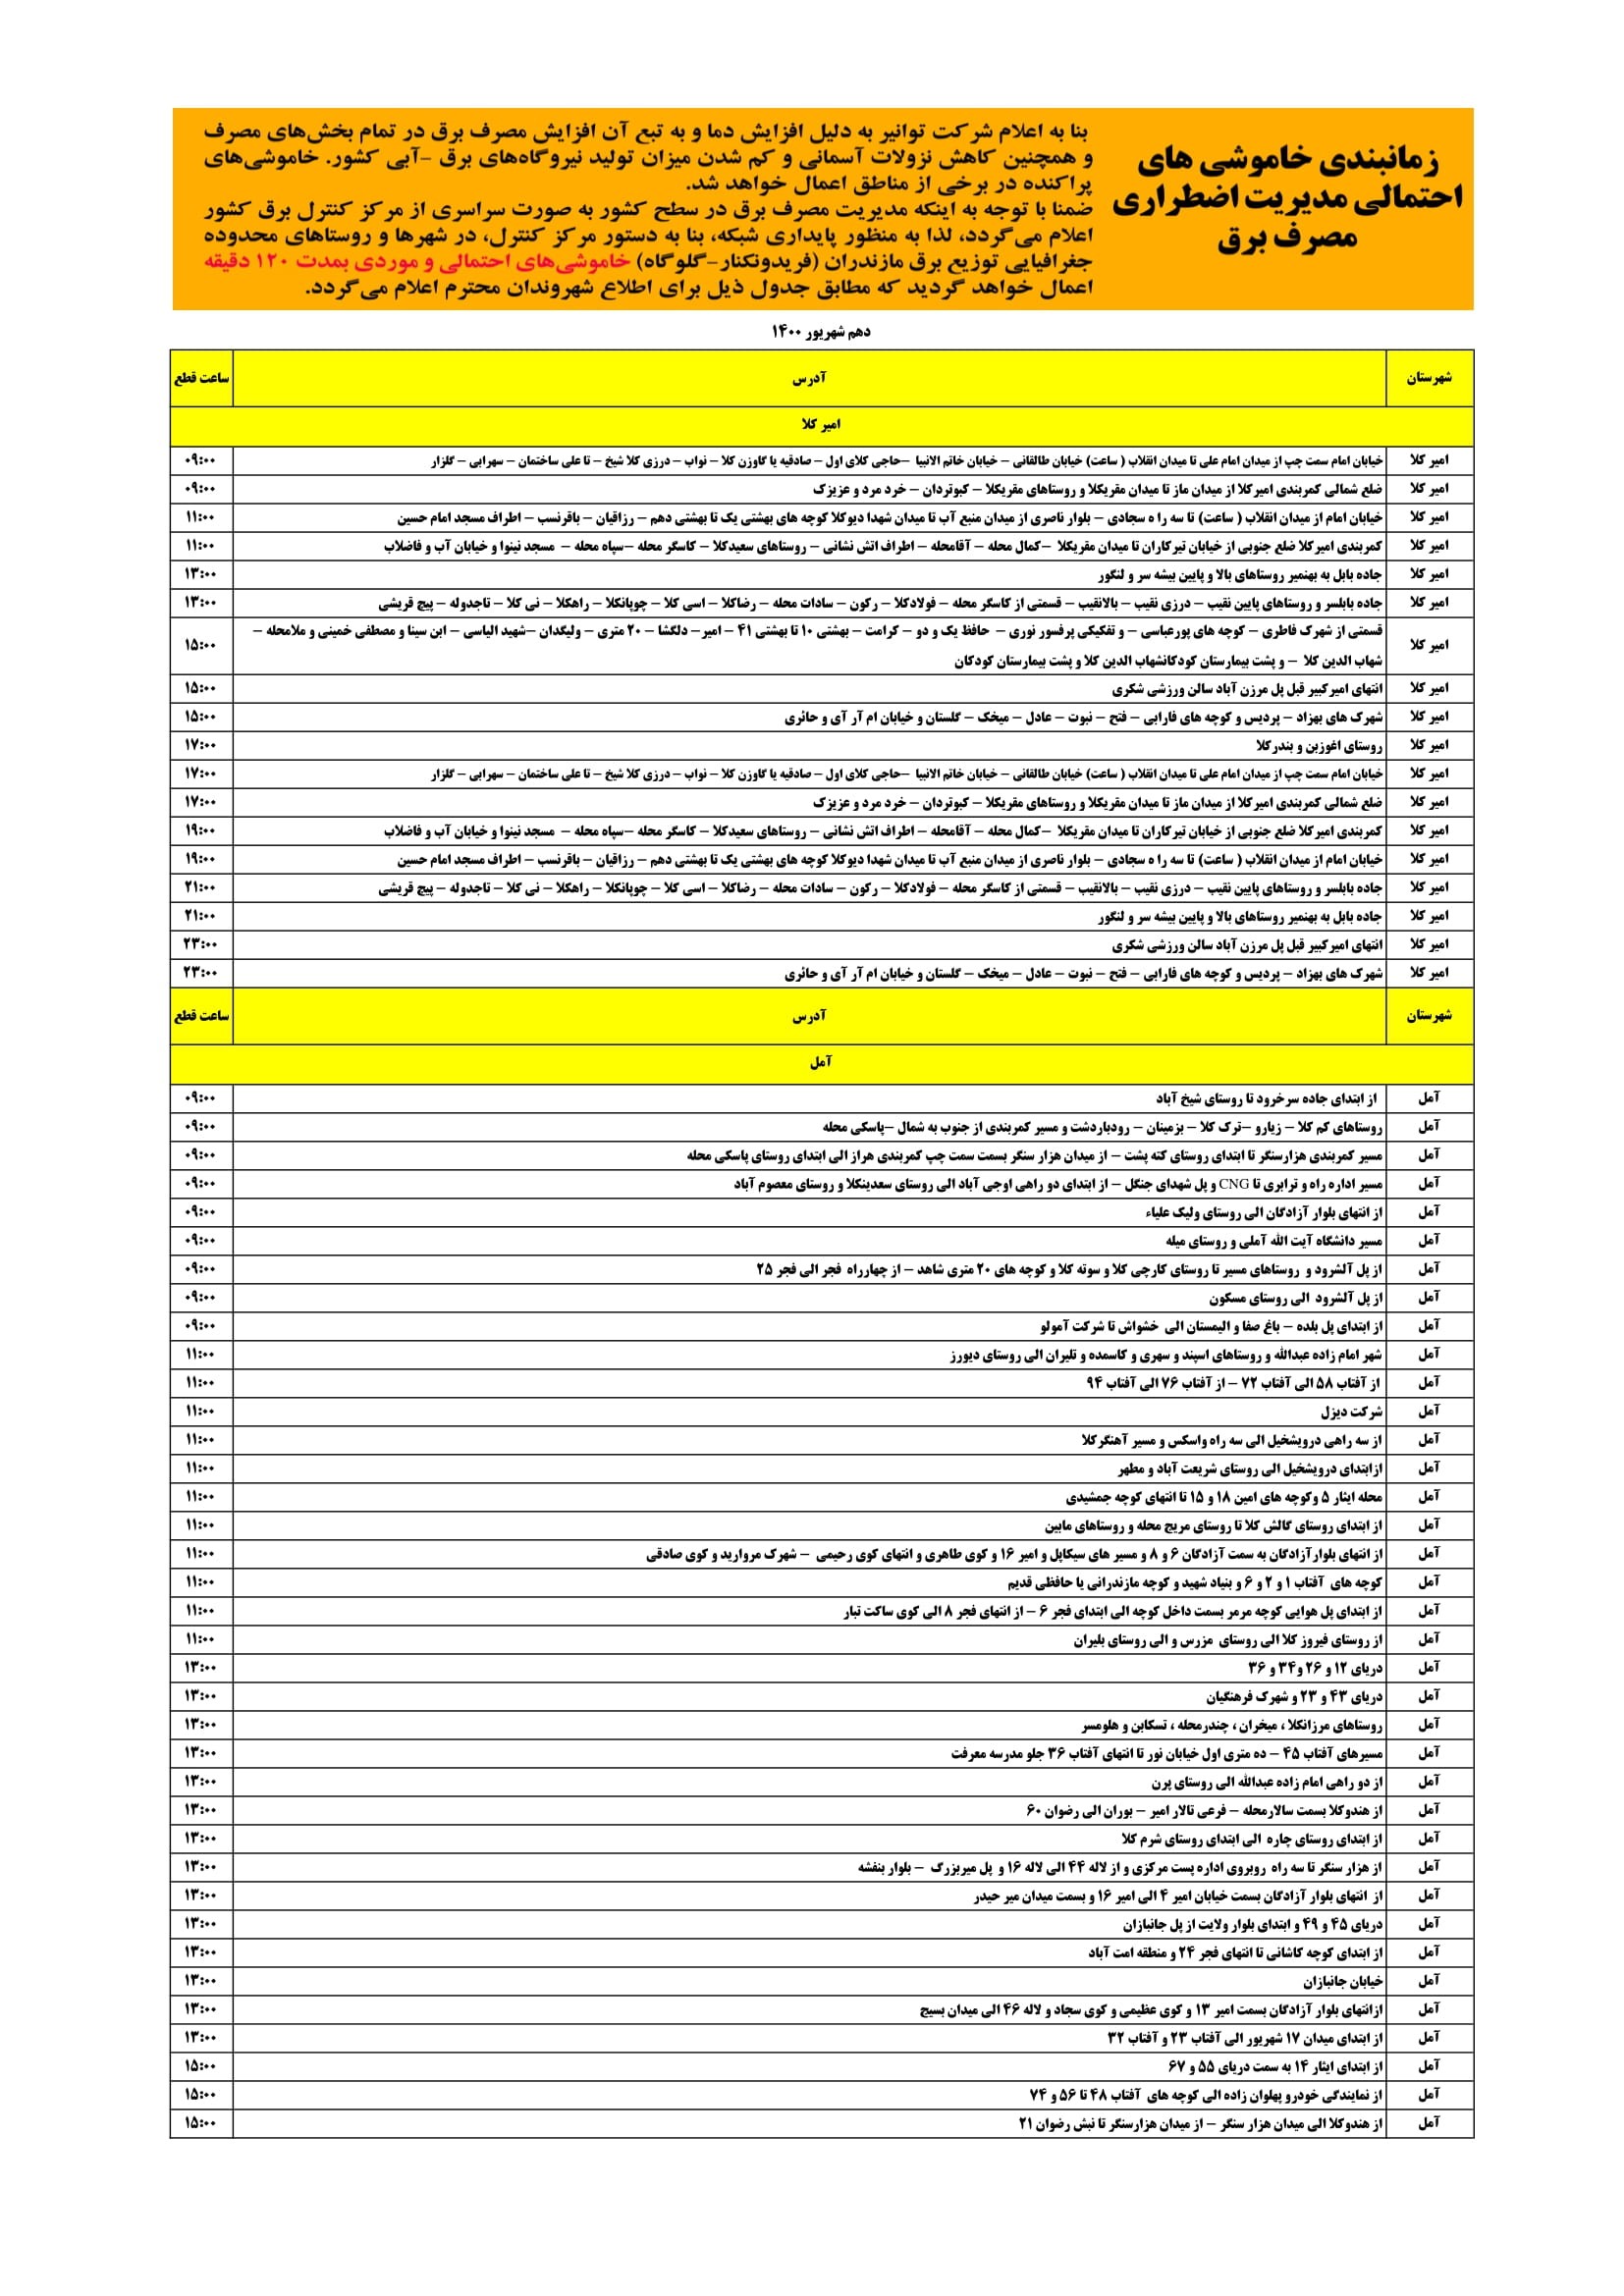 برنامه قطعی برق مازندران چهارشنبه 10 شهریور 1400